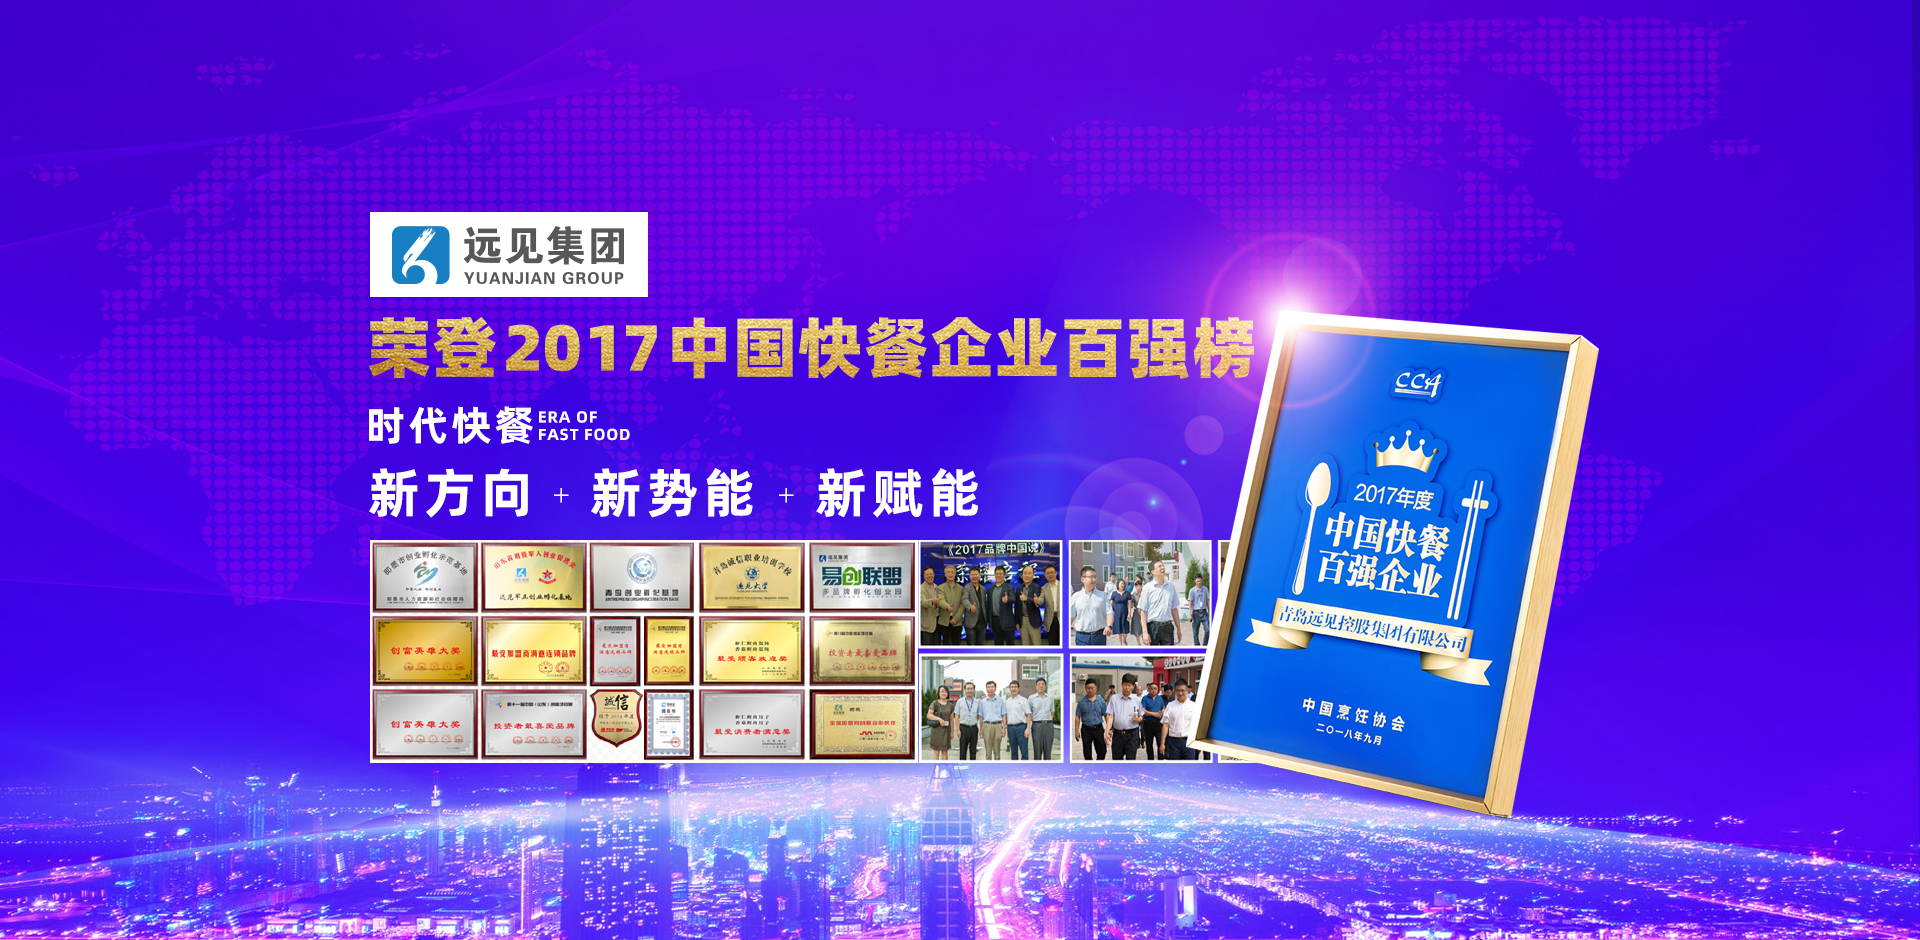 52week便利店总部荣登2017中国快餐企业百强榜！